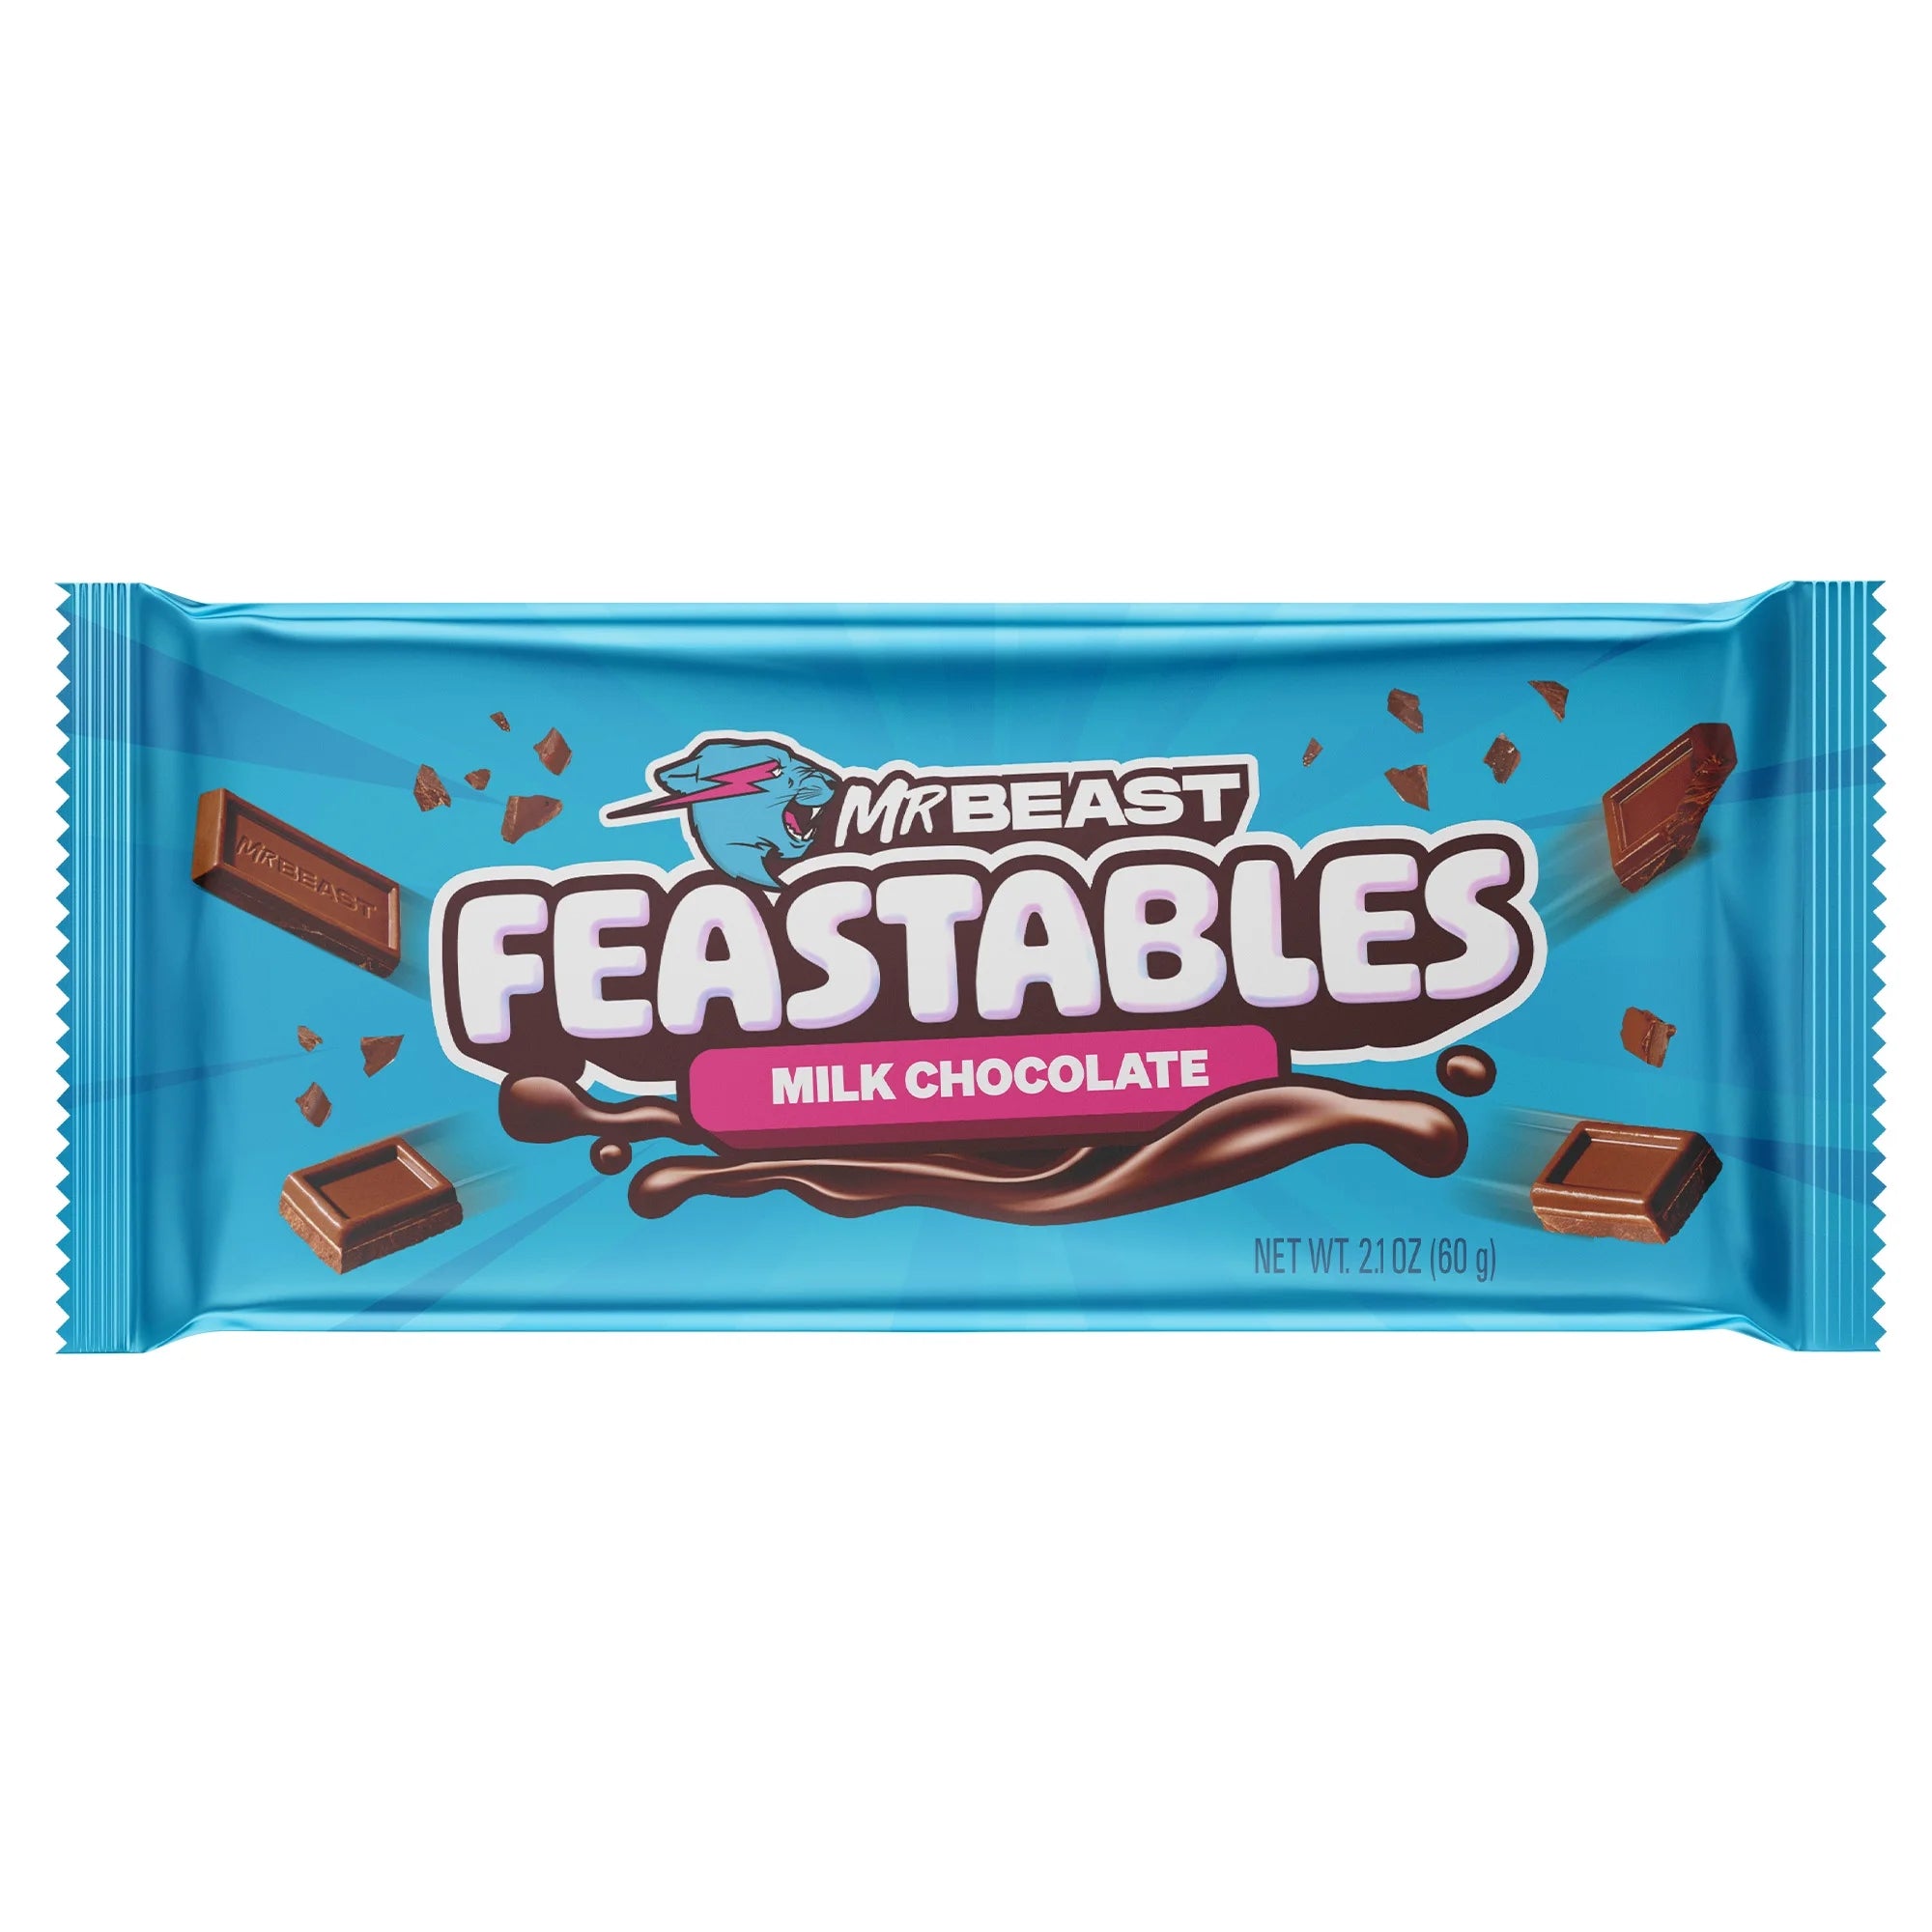 Mr beast feastables milk chocolate